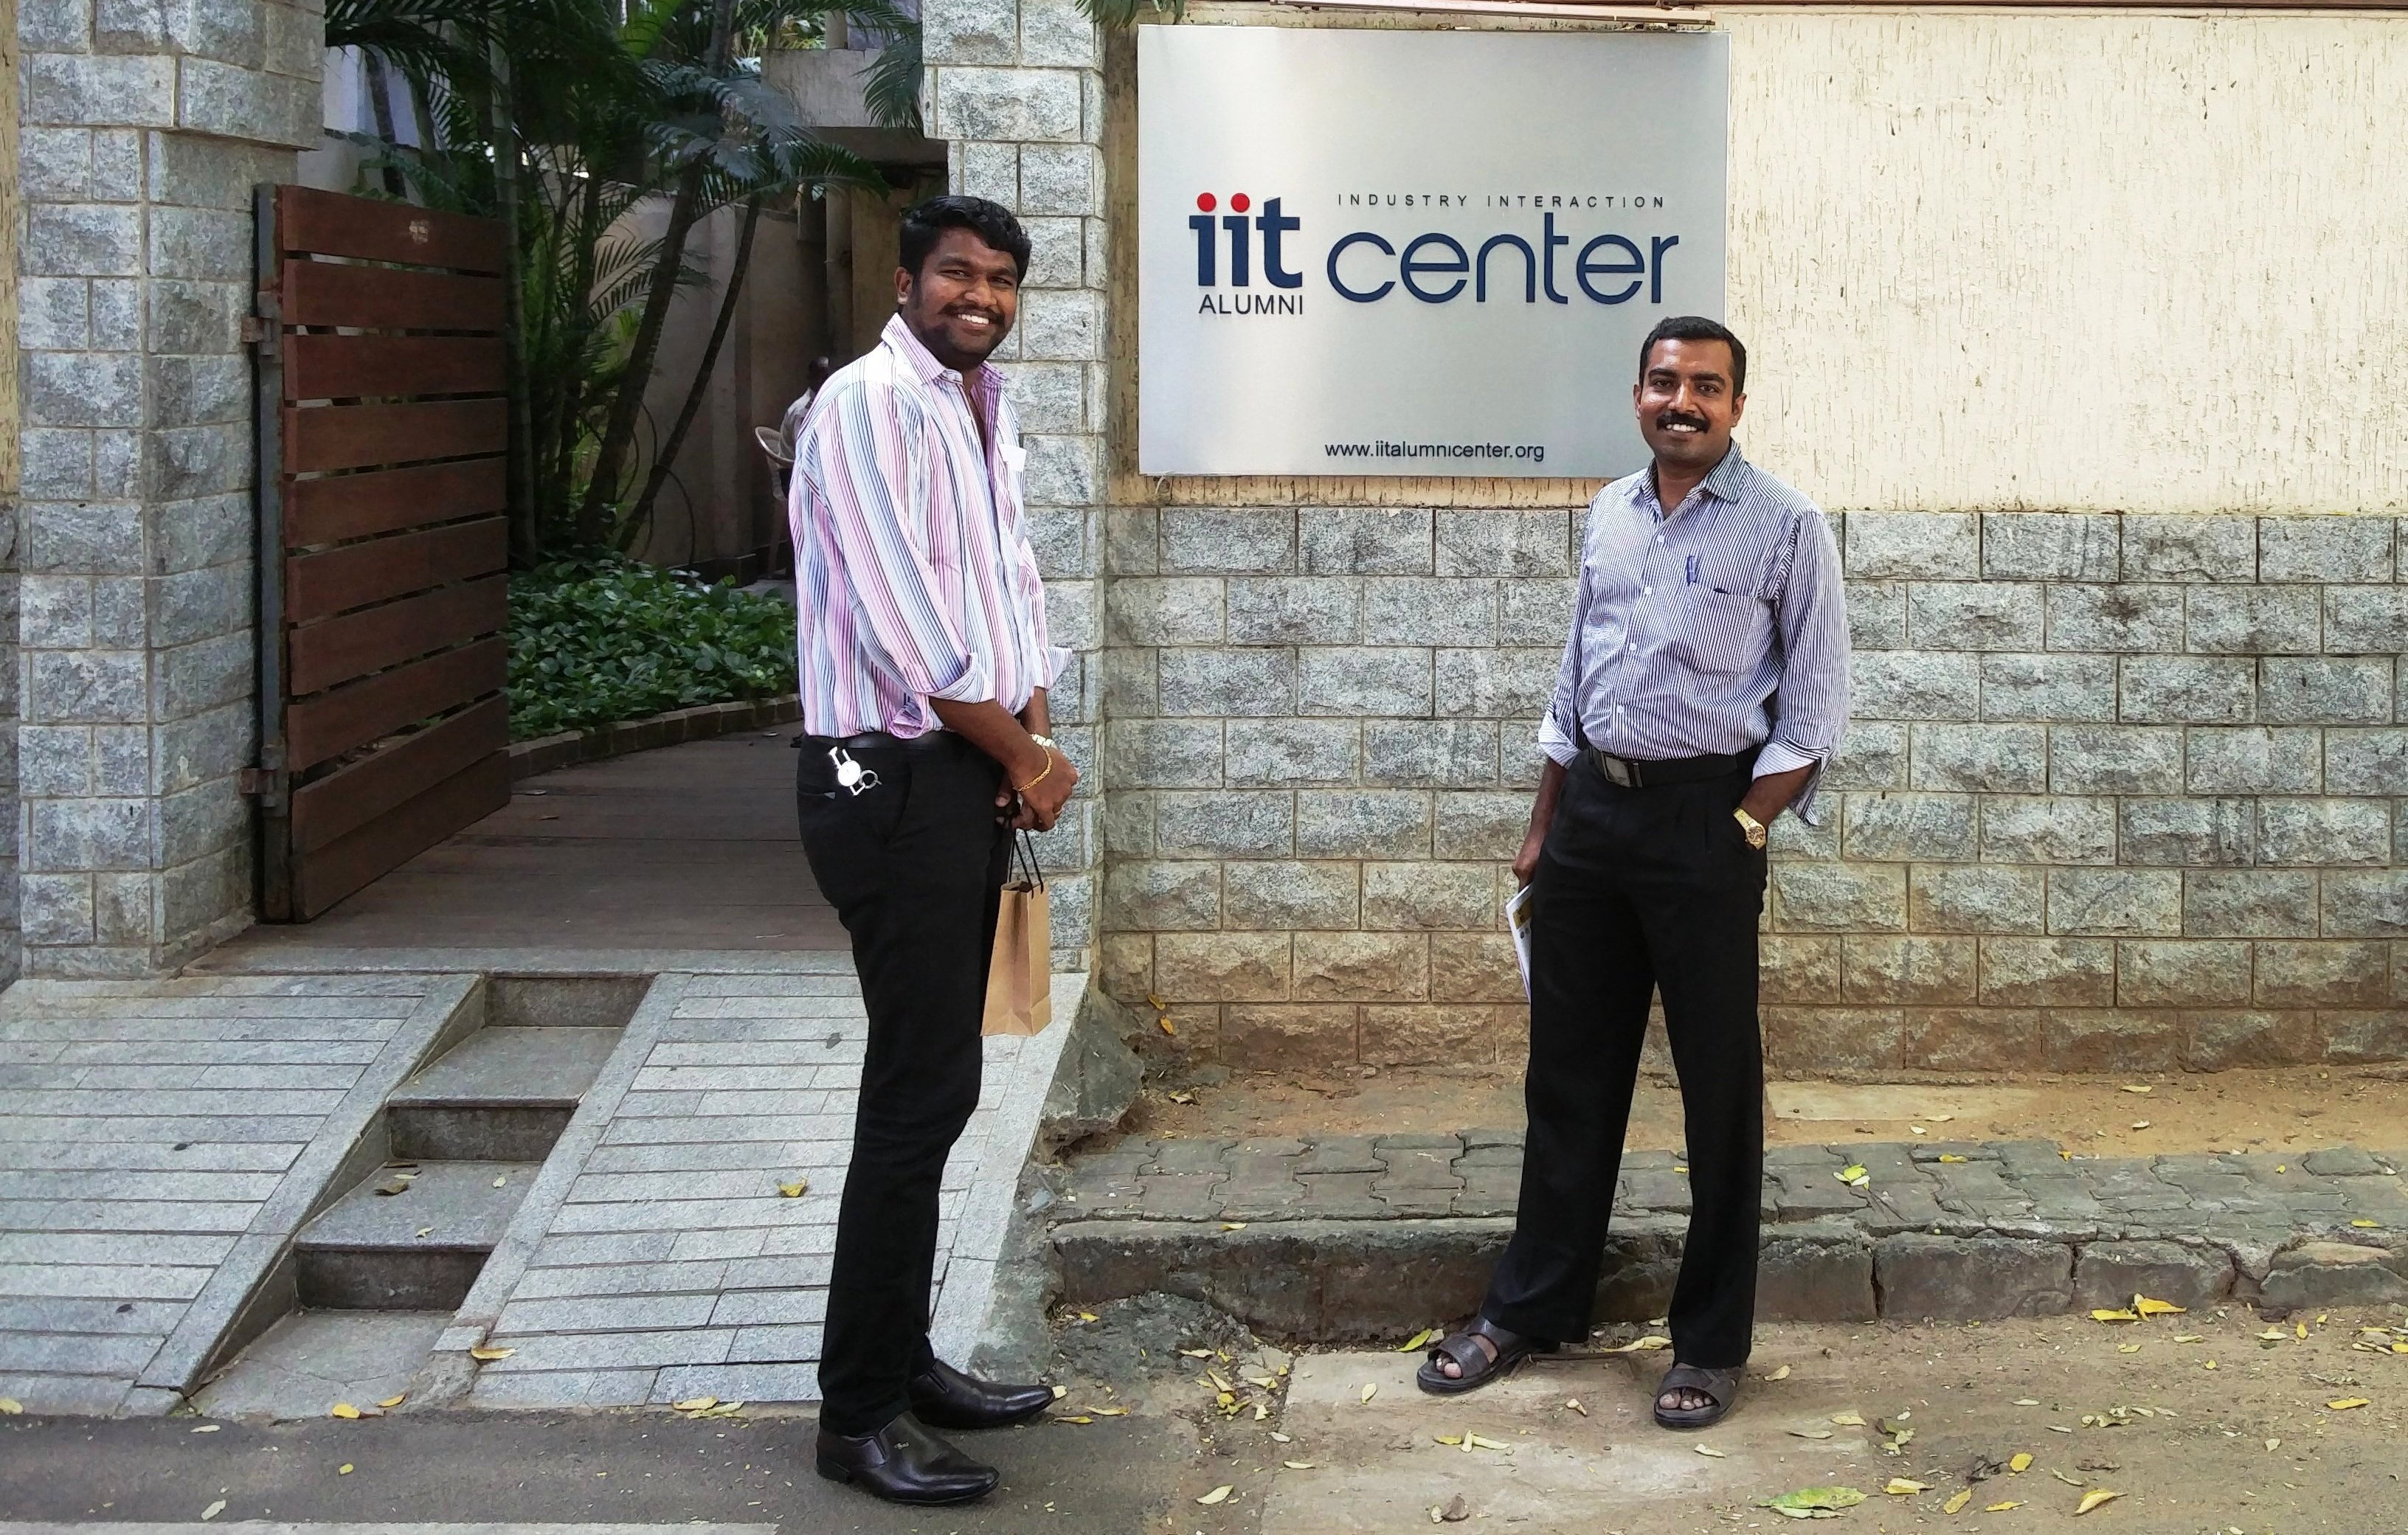 IIT – PALS Executive Council Meeting held at IIT Alumni Center, Chennai